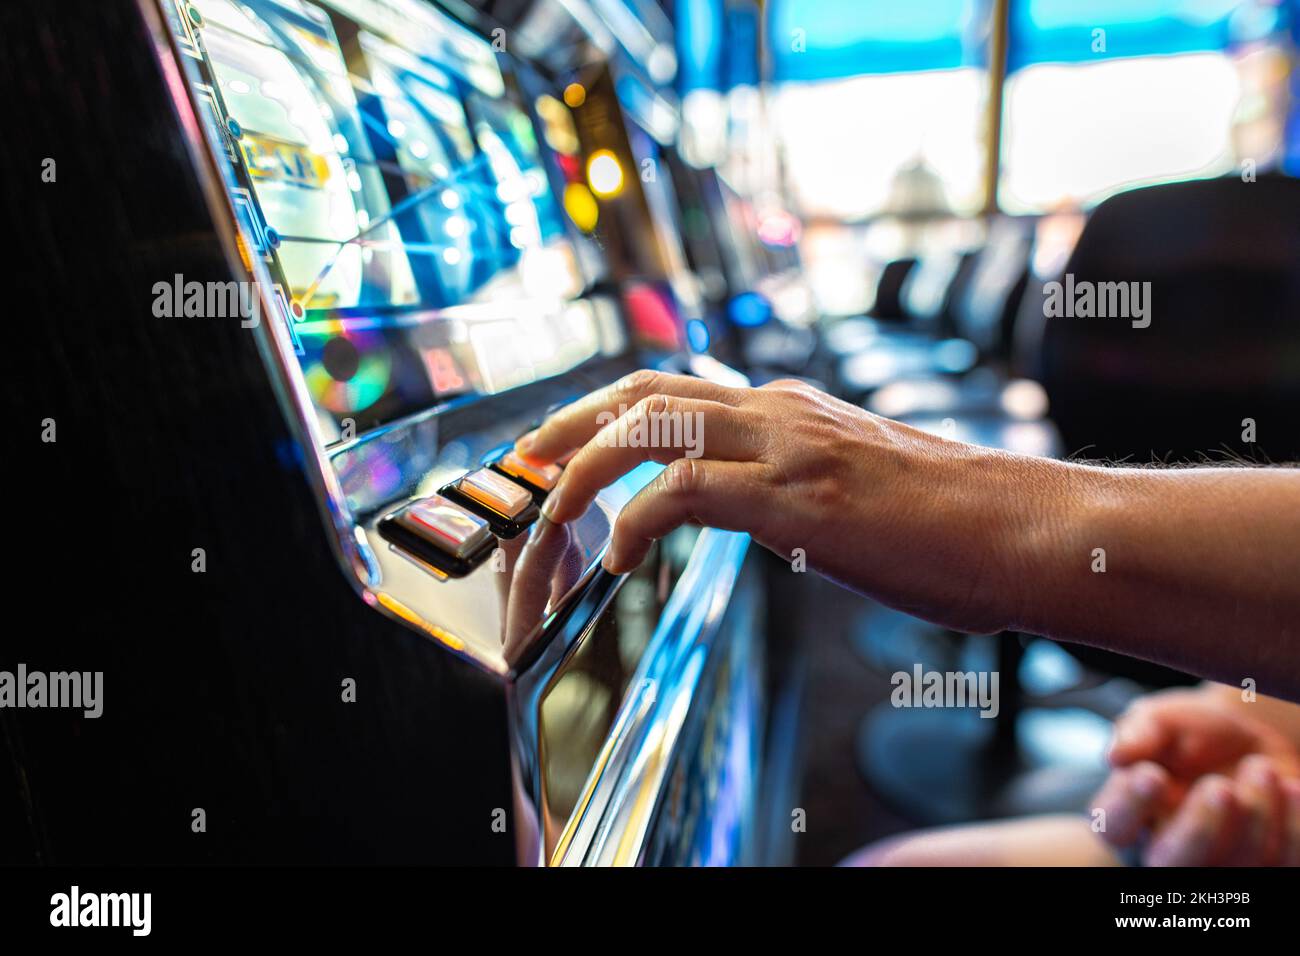 Primo piano del giocatore premendo il pulsante Spin mentre si gioca slot Machine nel Casinò. Tema dell'industria del gioco d'azzardo. Foto Stock